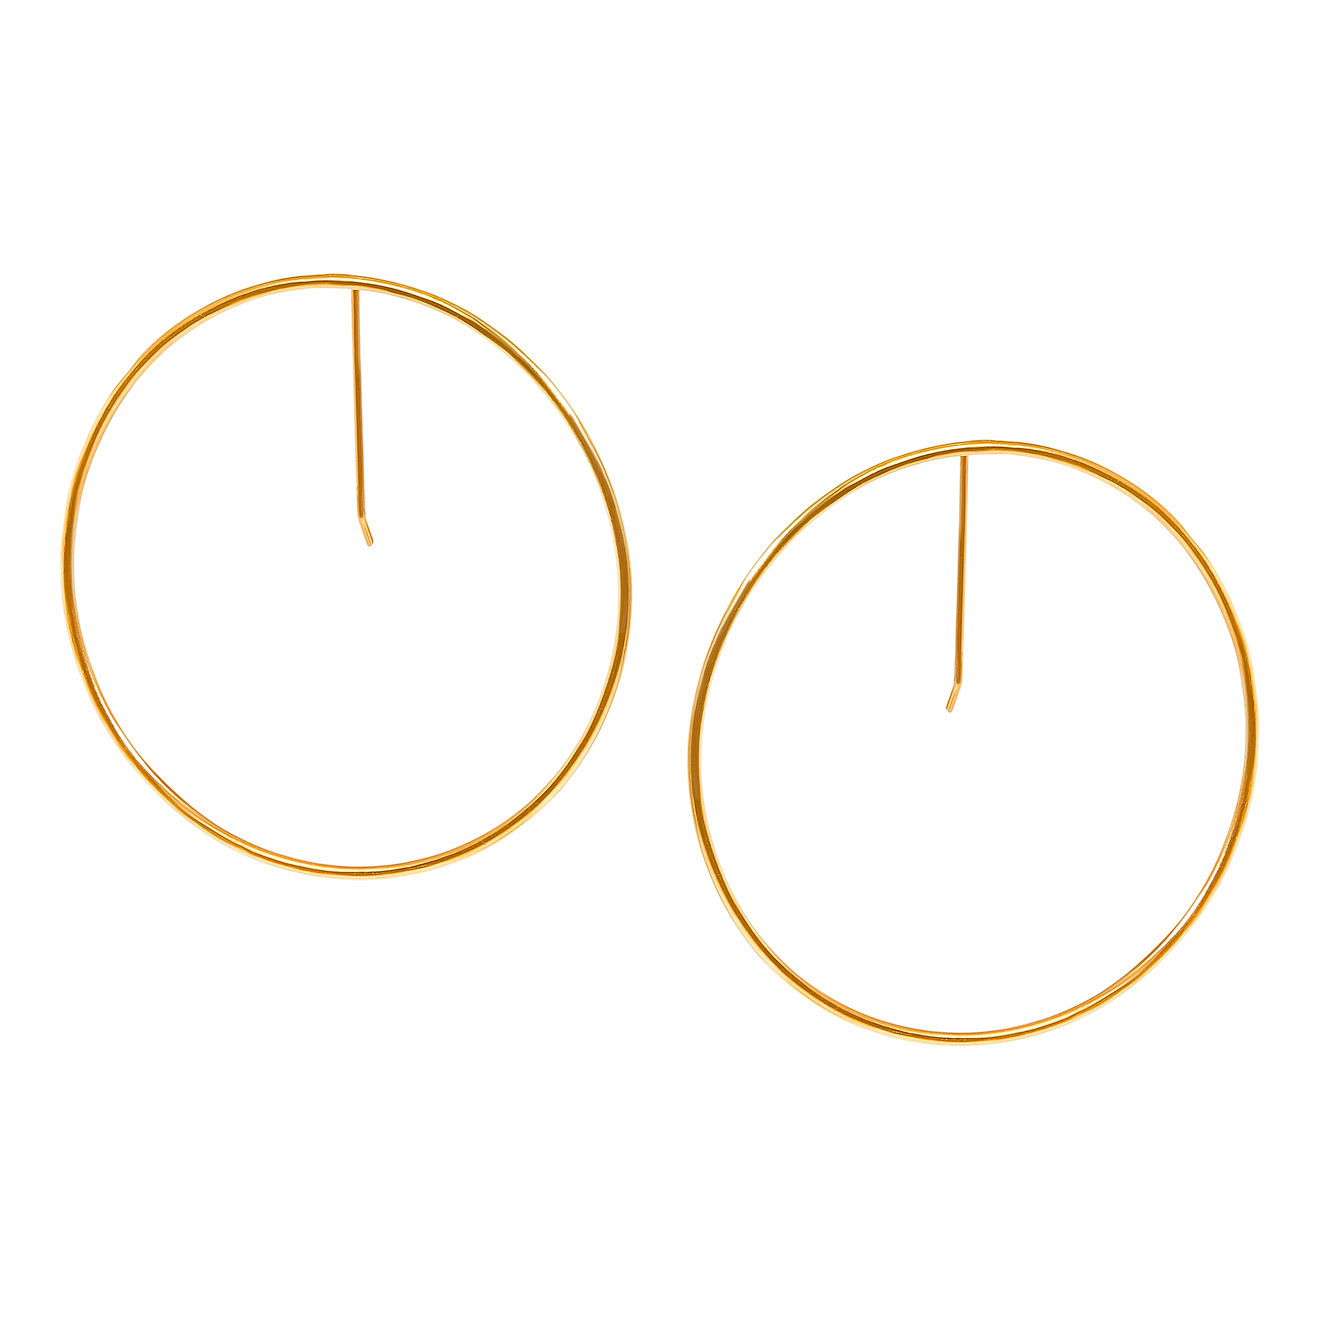 Khoshtrik Большие позолоченные серьги-круги khoshtrik плоские позолоченные серьги круги из серебра